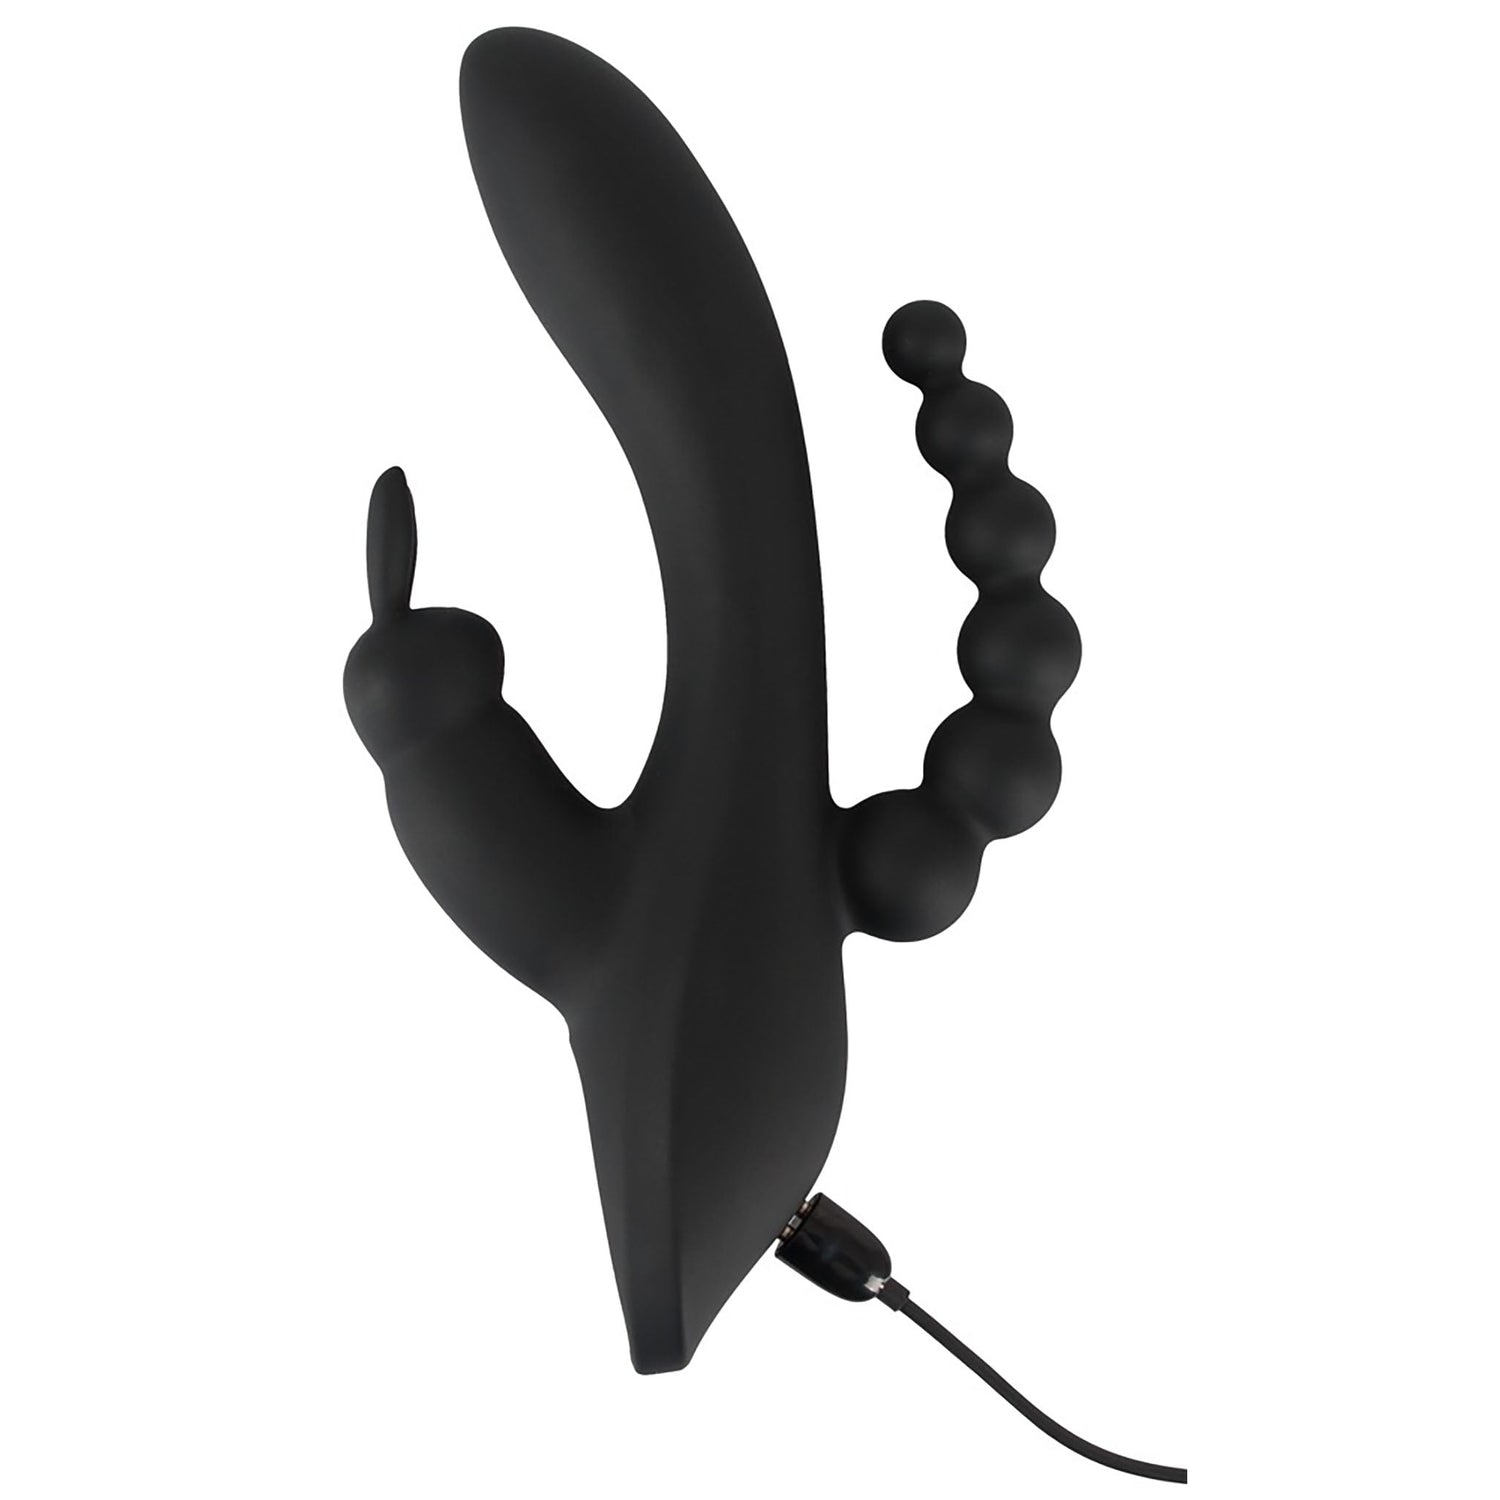 Triple G-Punkt Vibrator in schwarz in einer Hand gehalten